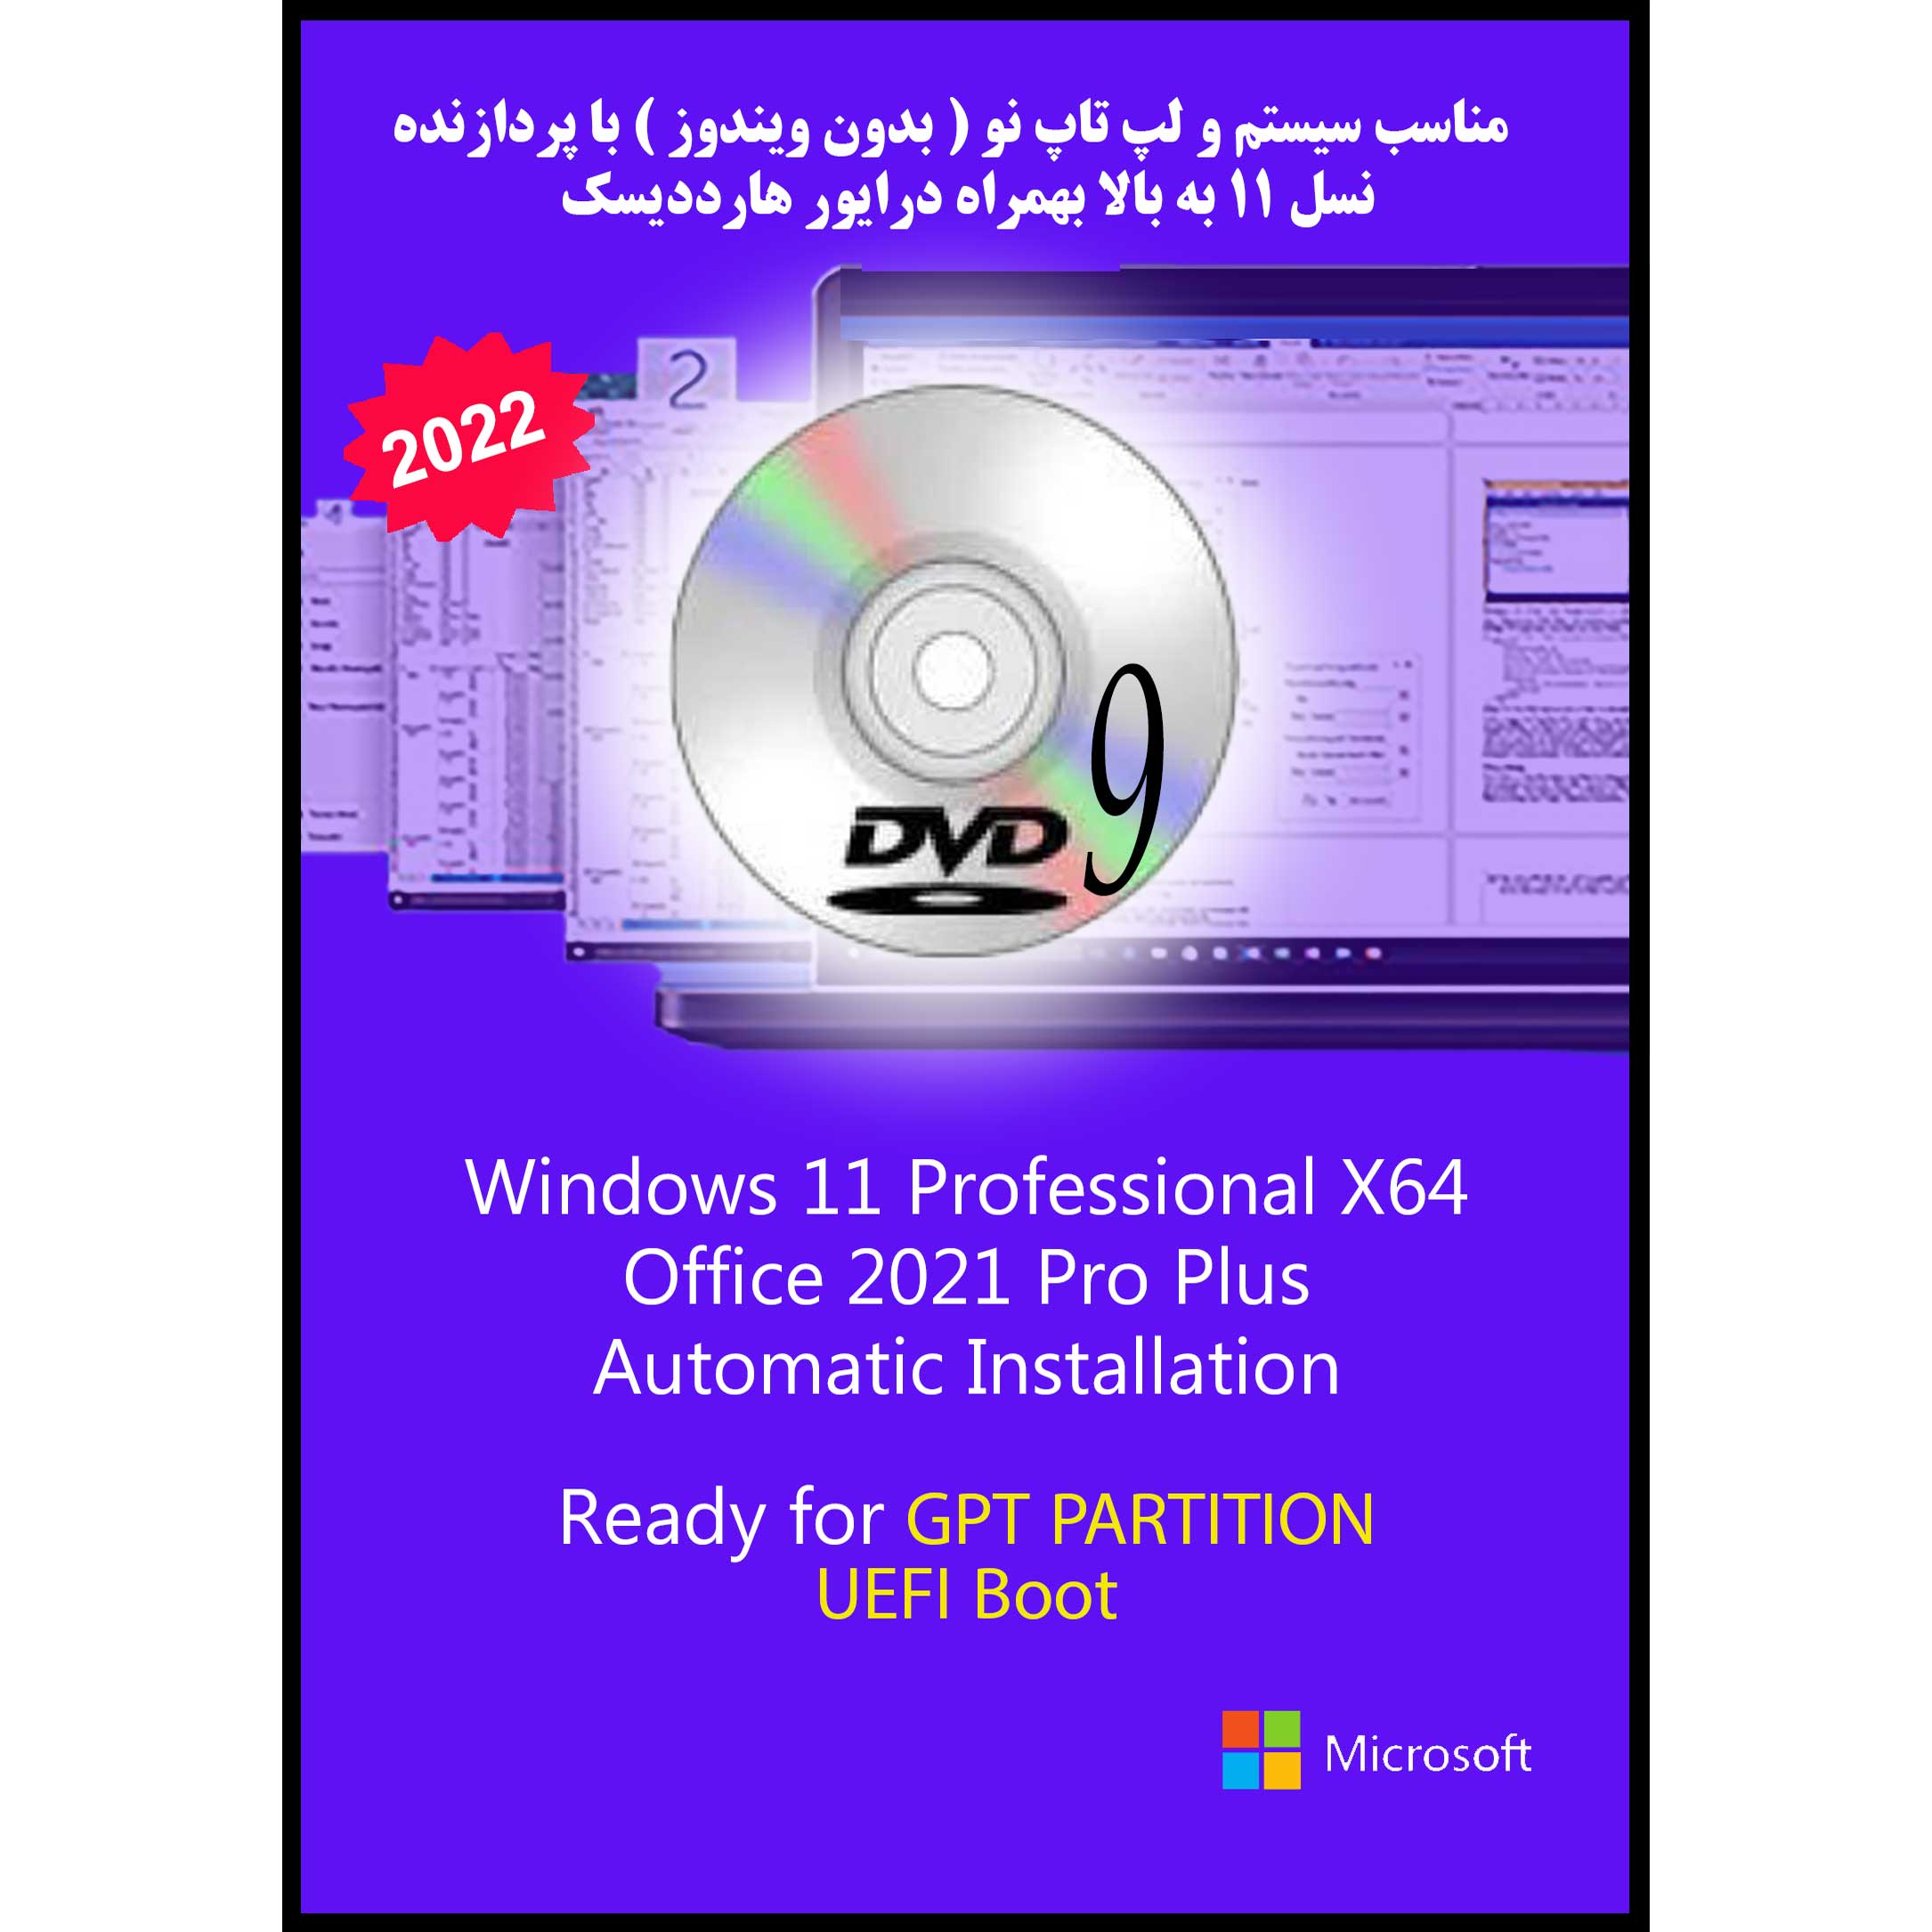 سیستم عامل Windows 11 Pro UEFI - IRST Driver - Office 2021 Pro Plus  نشر مایکروسافت